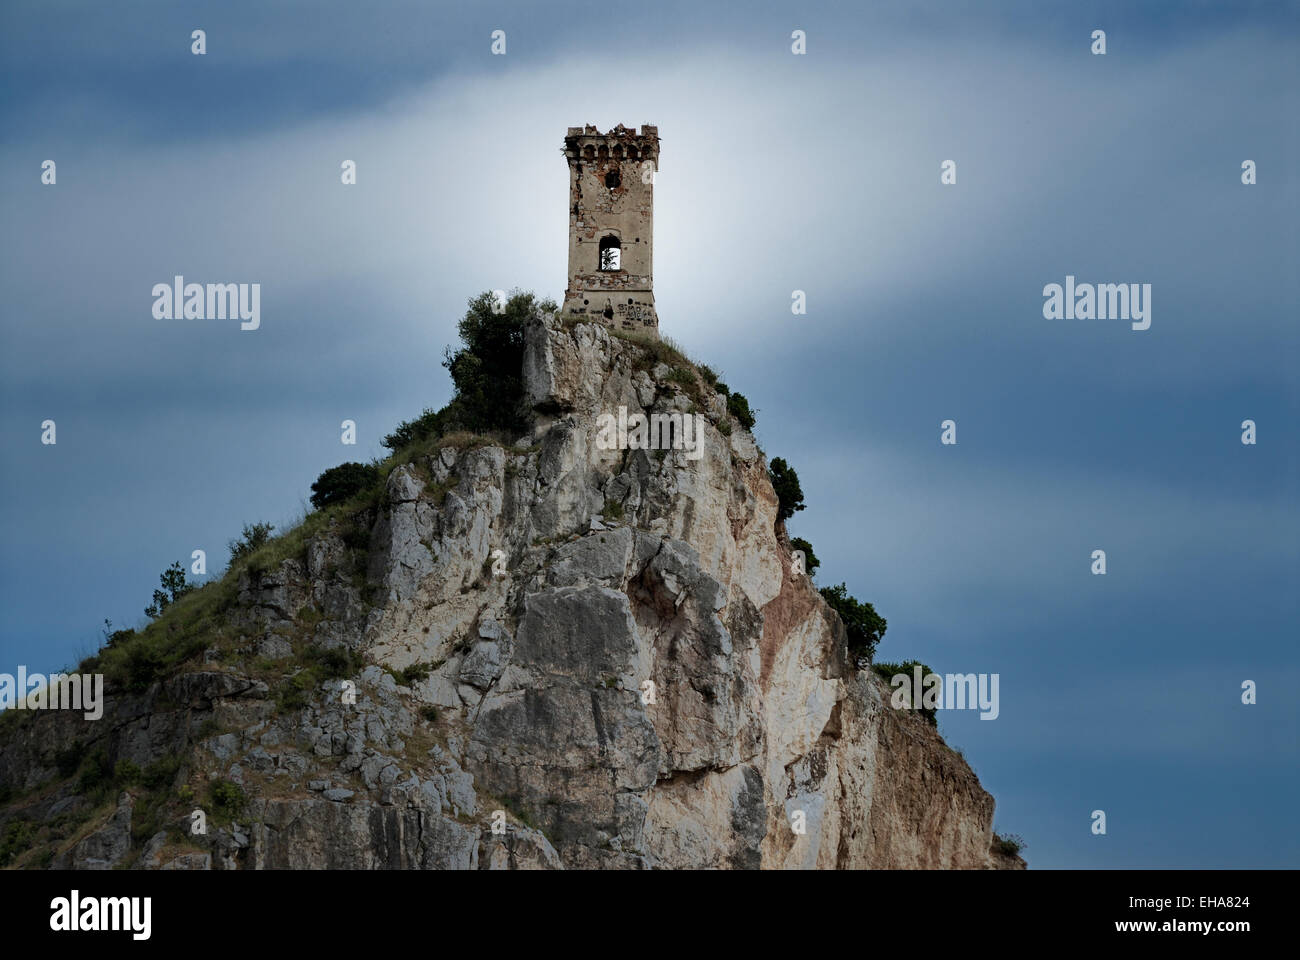 Mittelalterliche Wachturm auf einem felsigen Berggipfel, Toskana, Italien Stockfoto